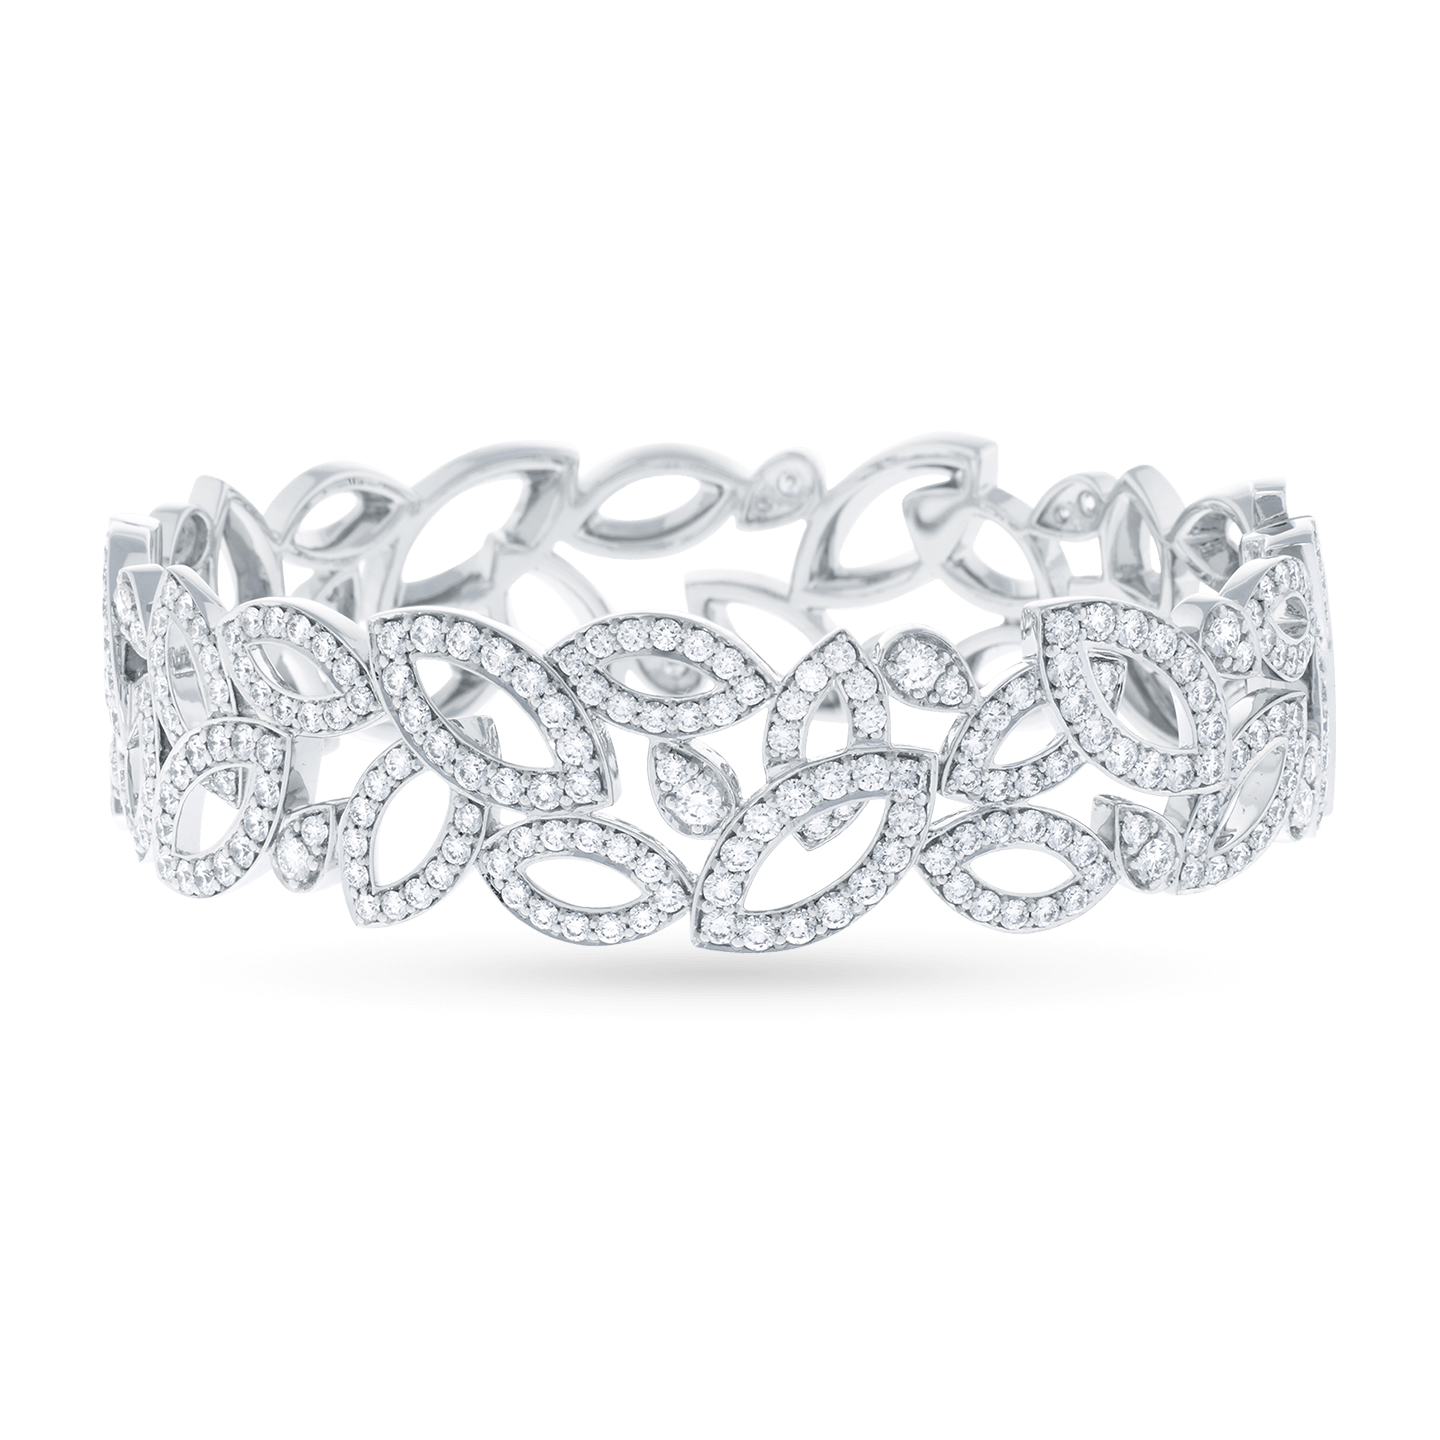 HARRY WINSTON Sapphire Diamond Bracelet  Diamond bracelet Sterling  silver bracelets Jewelry